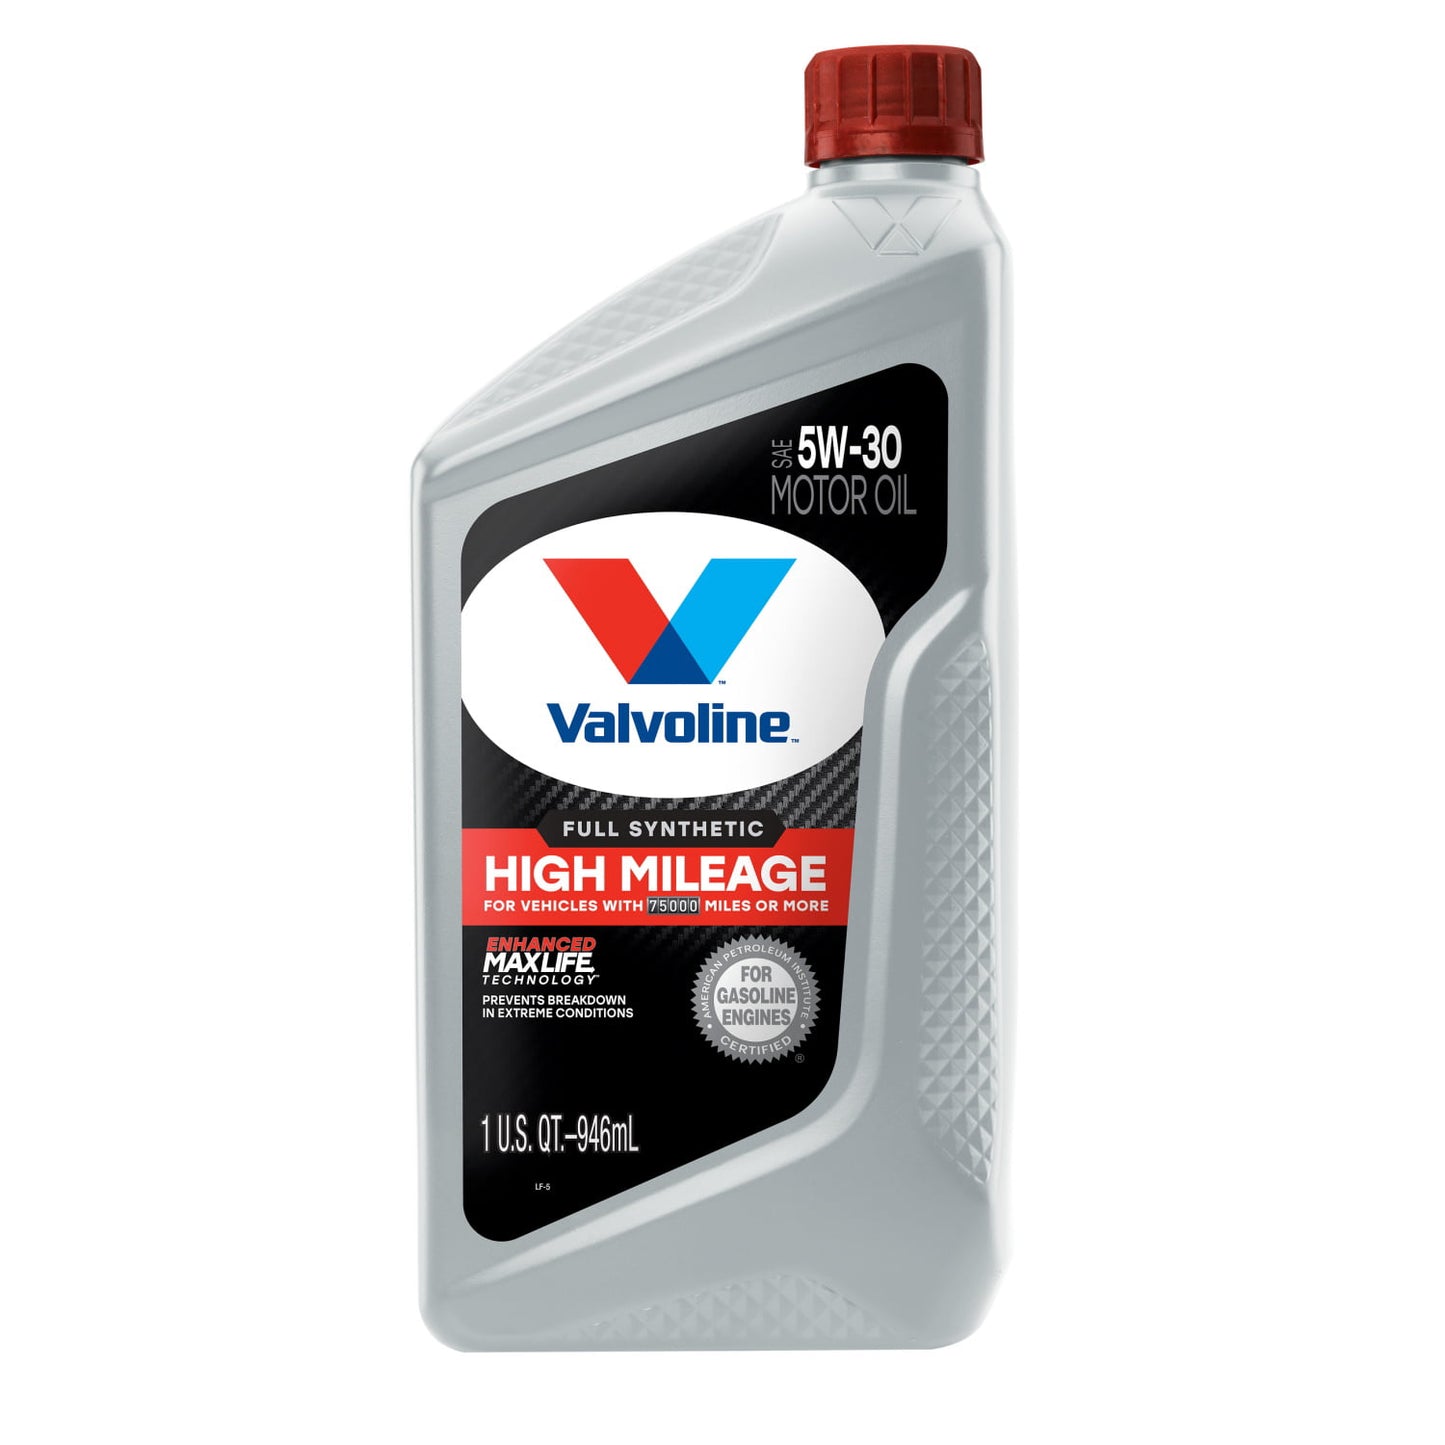 Aceite Valvoline 5w-30 Alto Kilometraje 100% Sintetico